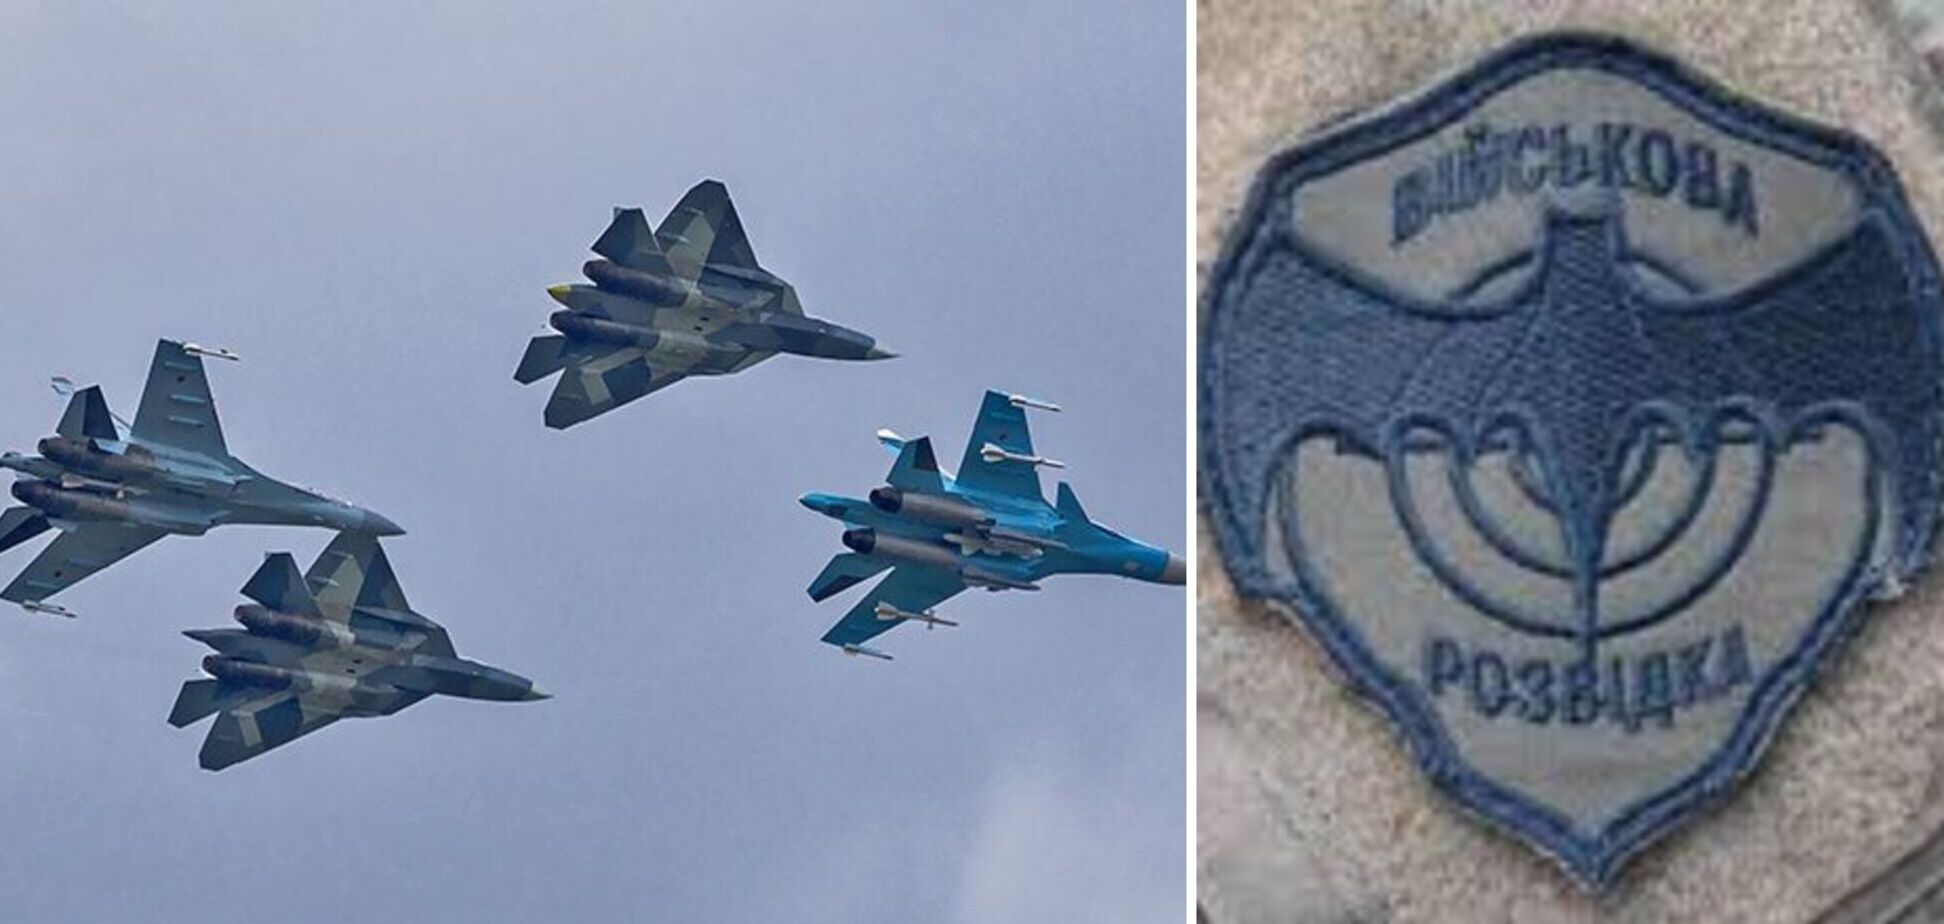 Специалисты из Беларуси восстанавливают российские боевые самолеты – разведка